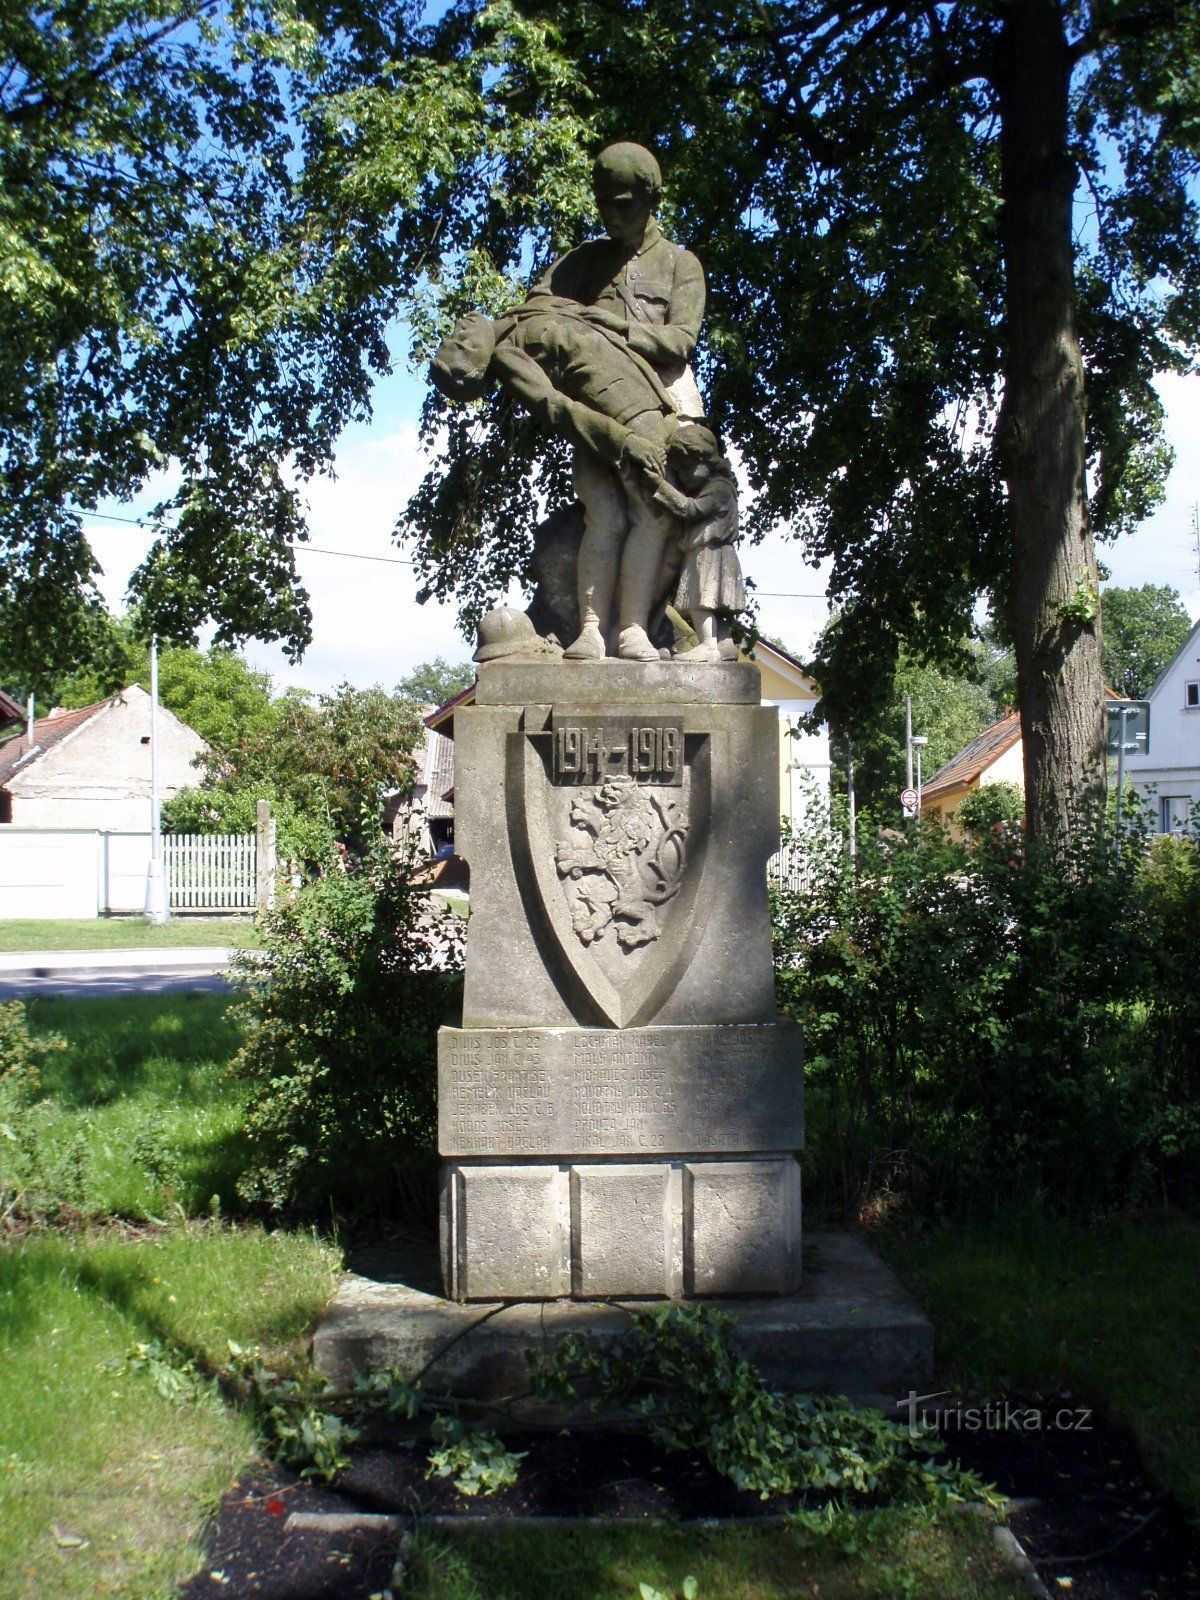 Đài tưởng niệm những người đã ngã xuống ở Malšov Lhota (Hradec Králové, 1.6.2009)